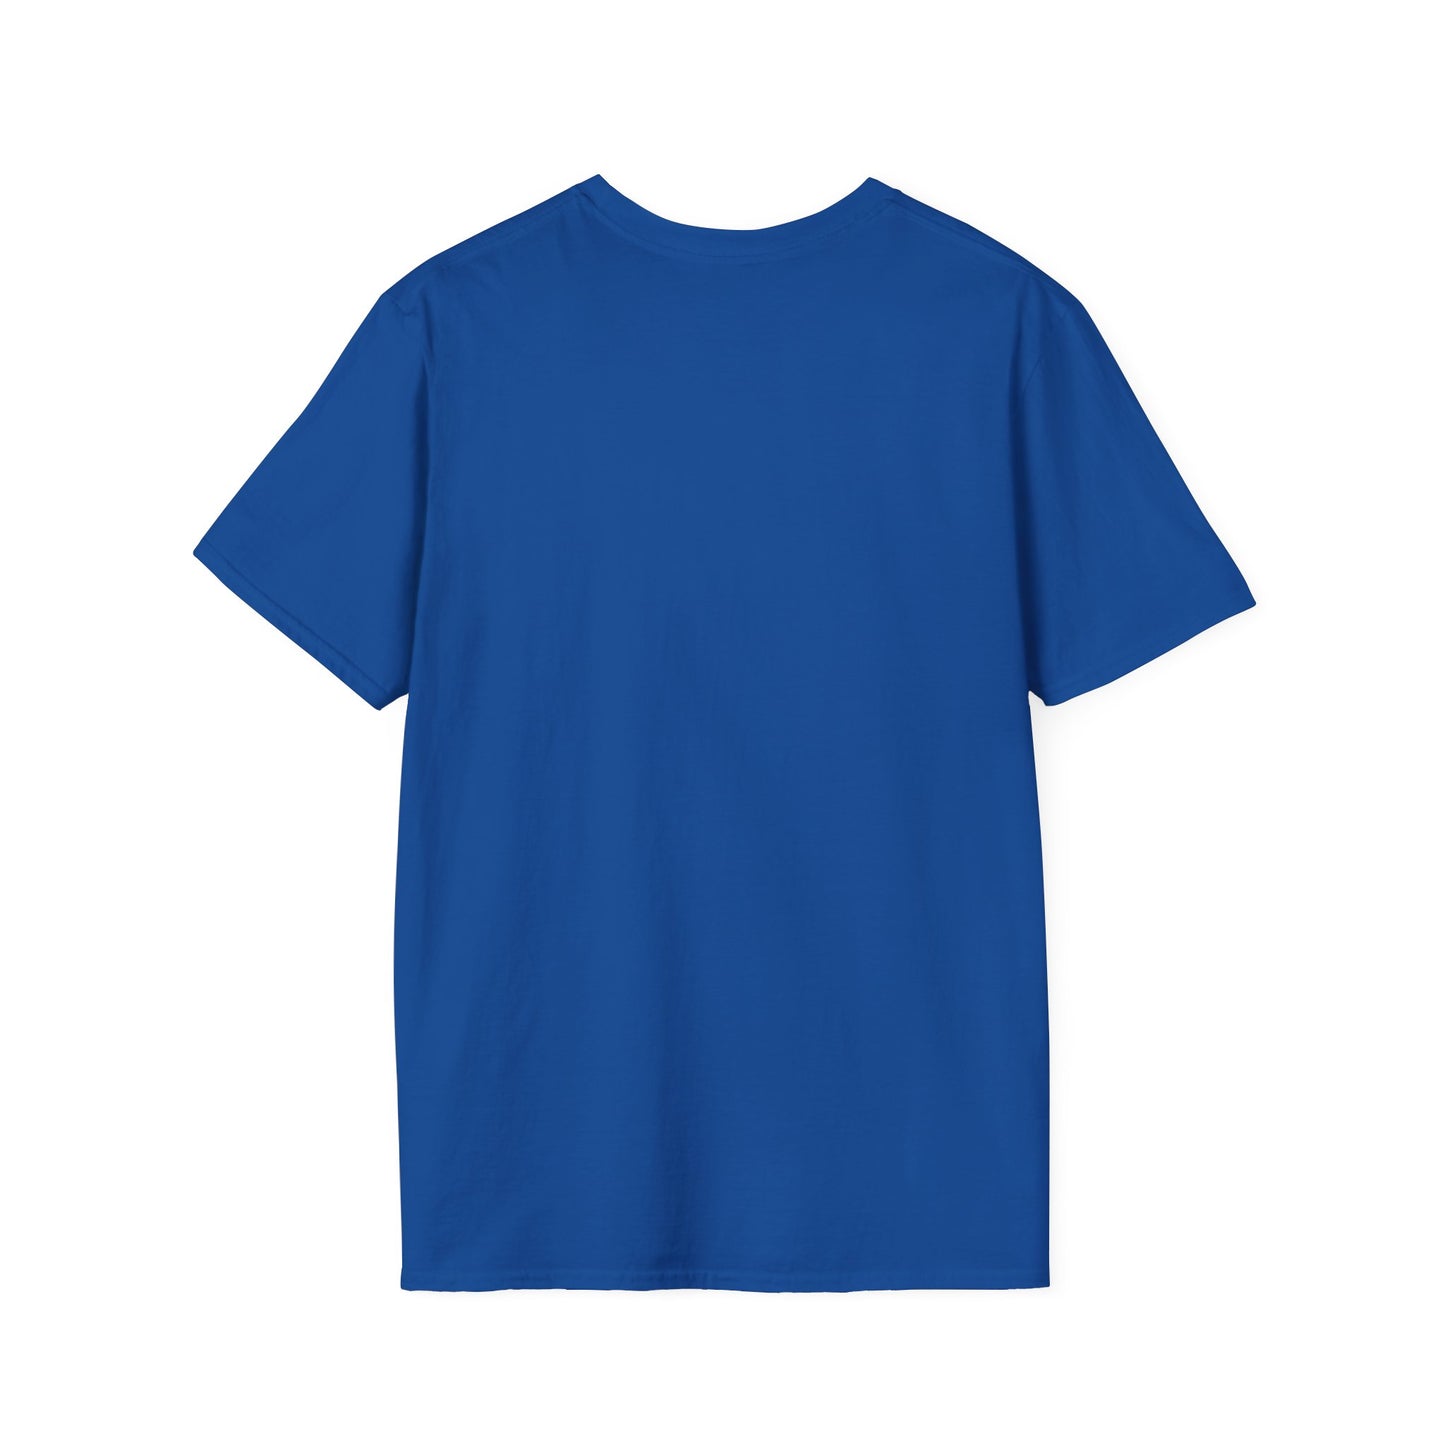 Unisex Softstyle design (Keep Moving) T-Shirt